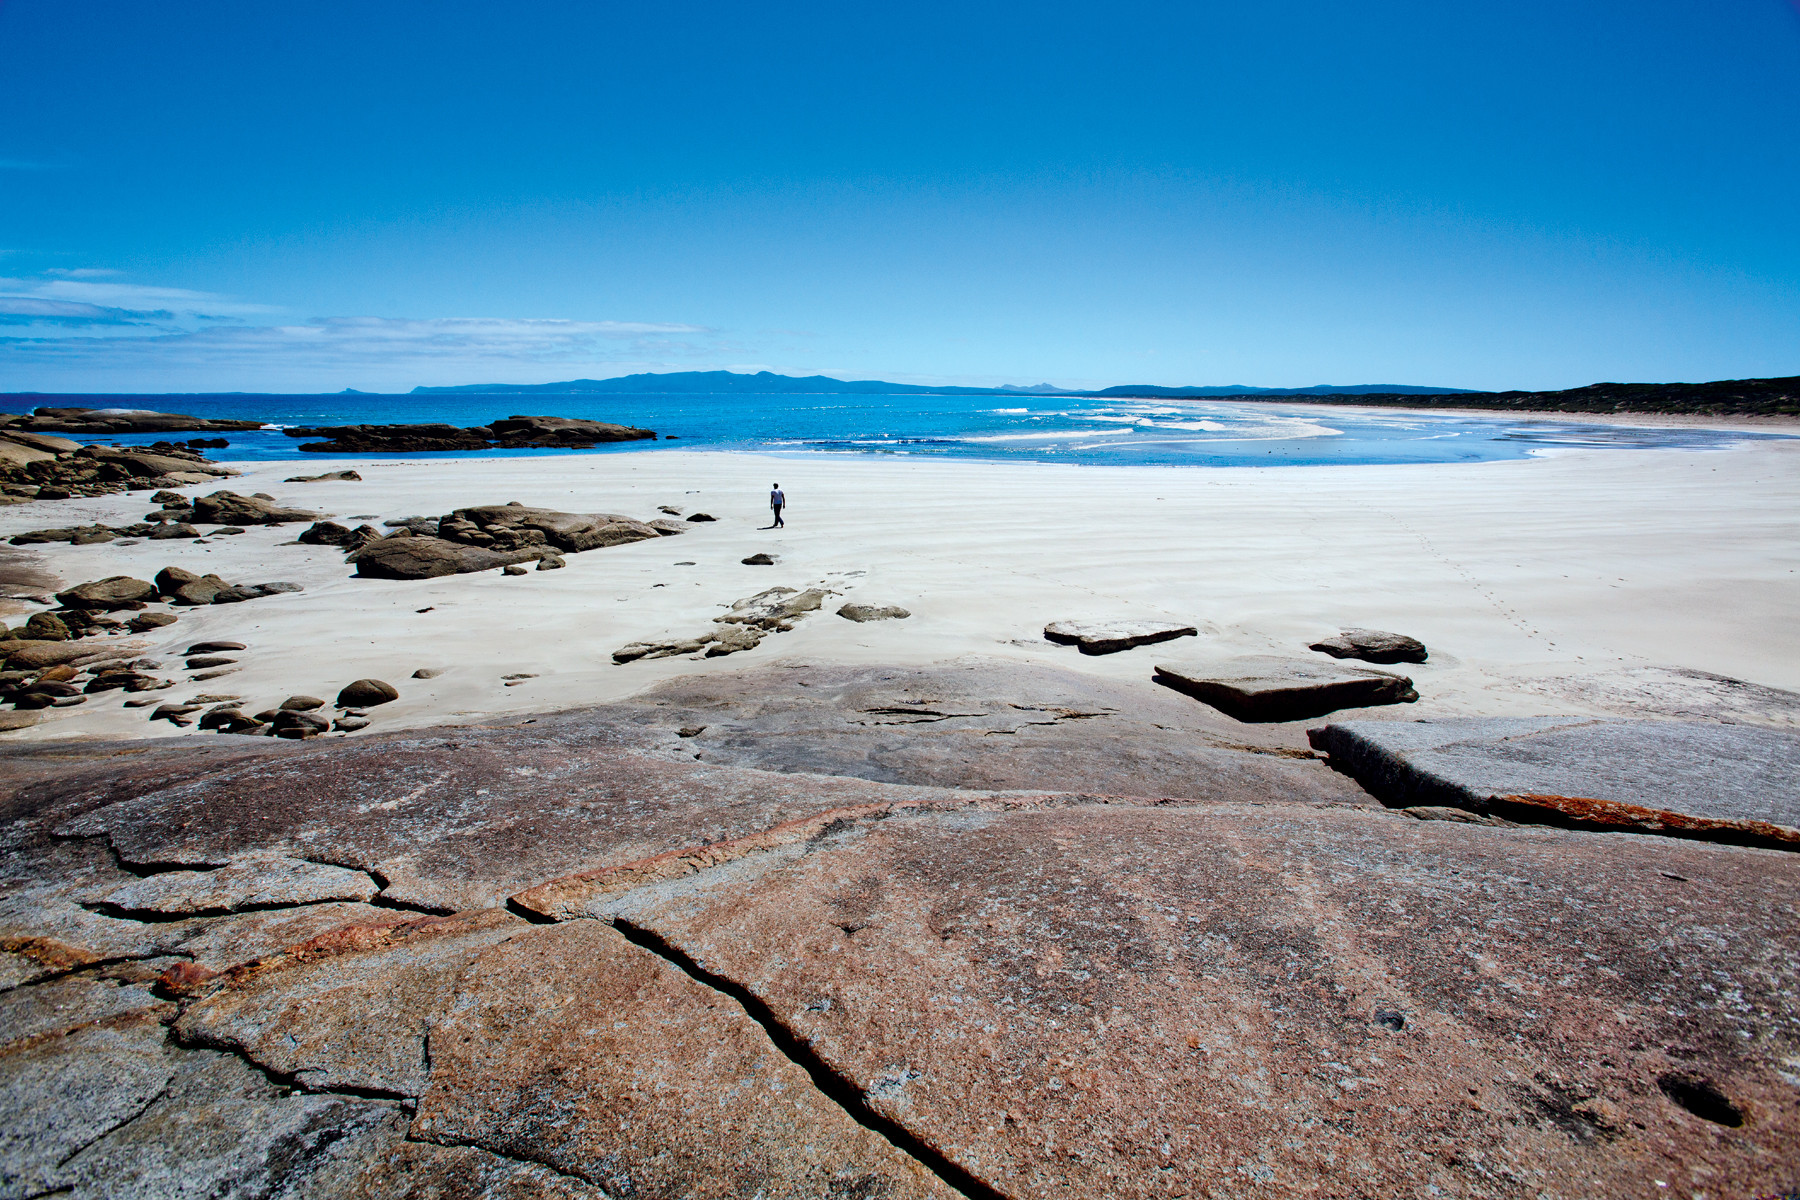 De fenomenale Furneaux-archipel, even ten noorden van Tasmanië, is zelfs voor veel Australiërs onbekend. Foto: Louise ten Have / Columbus Travel